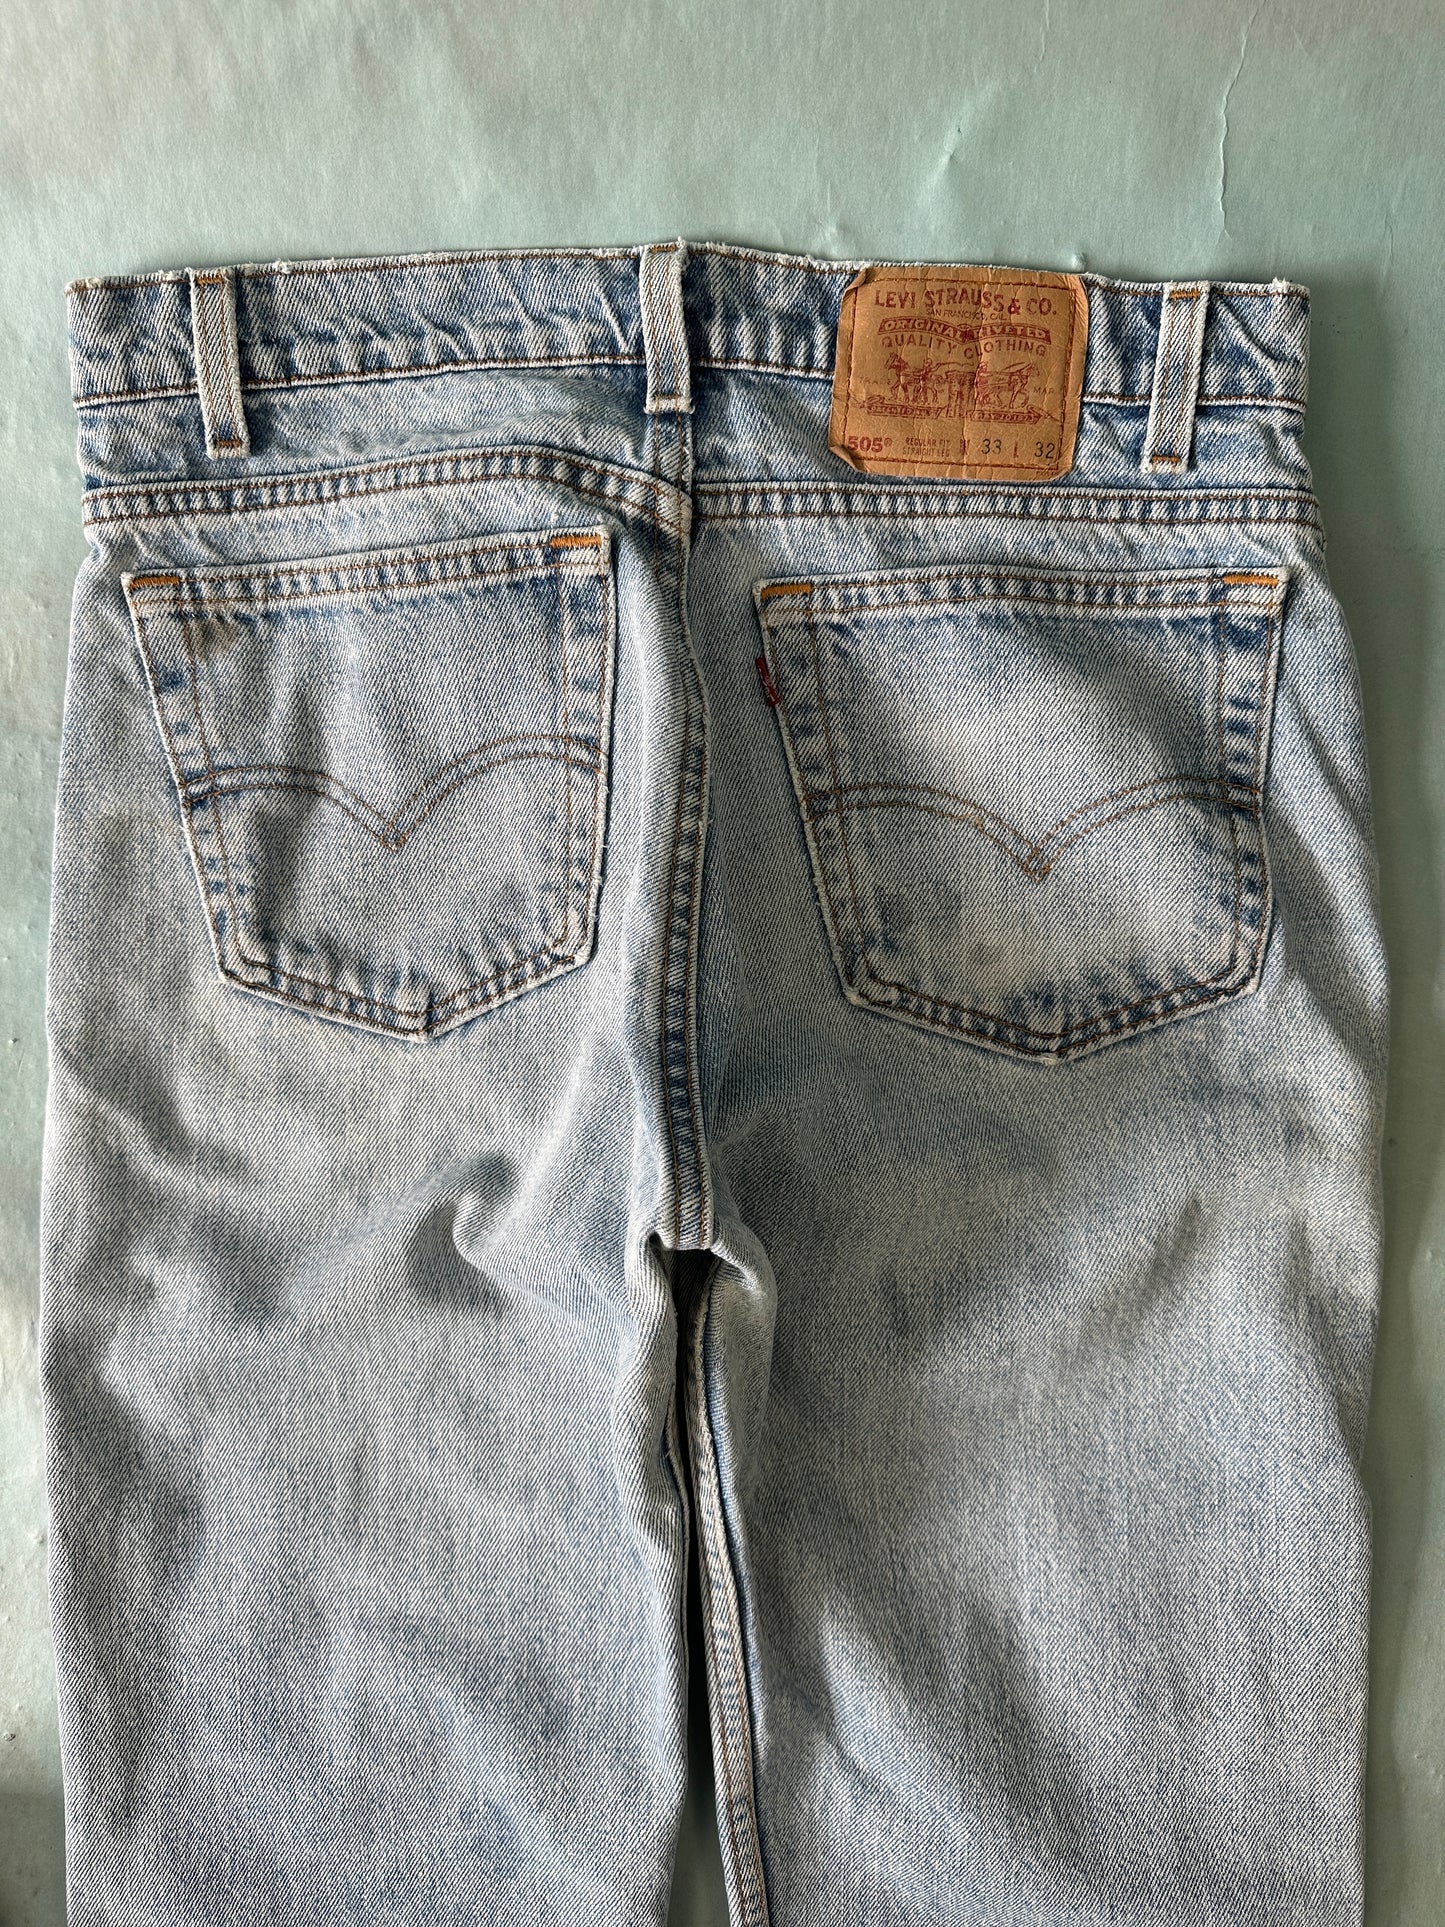 Levis 505 Vintage Jeans - 33 x 32